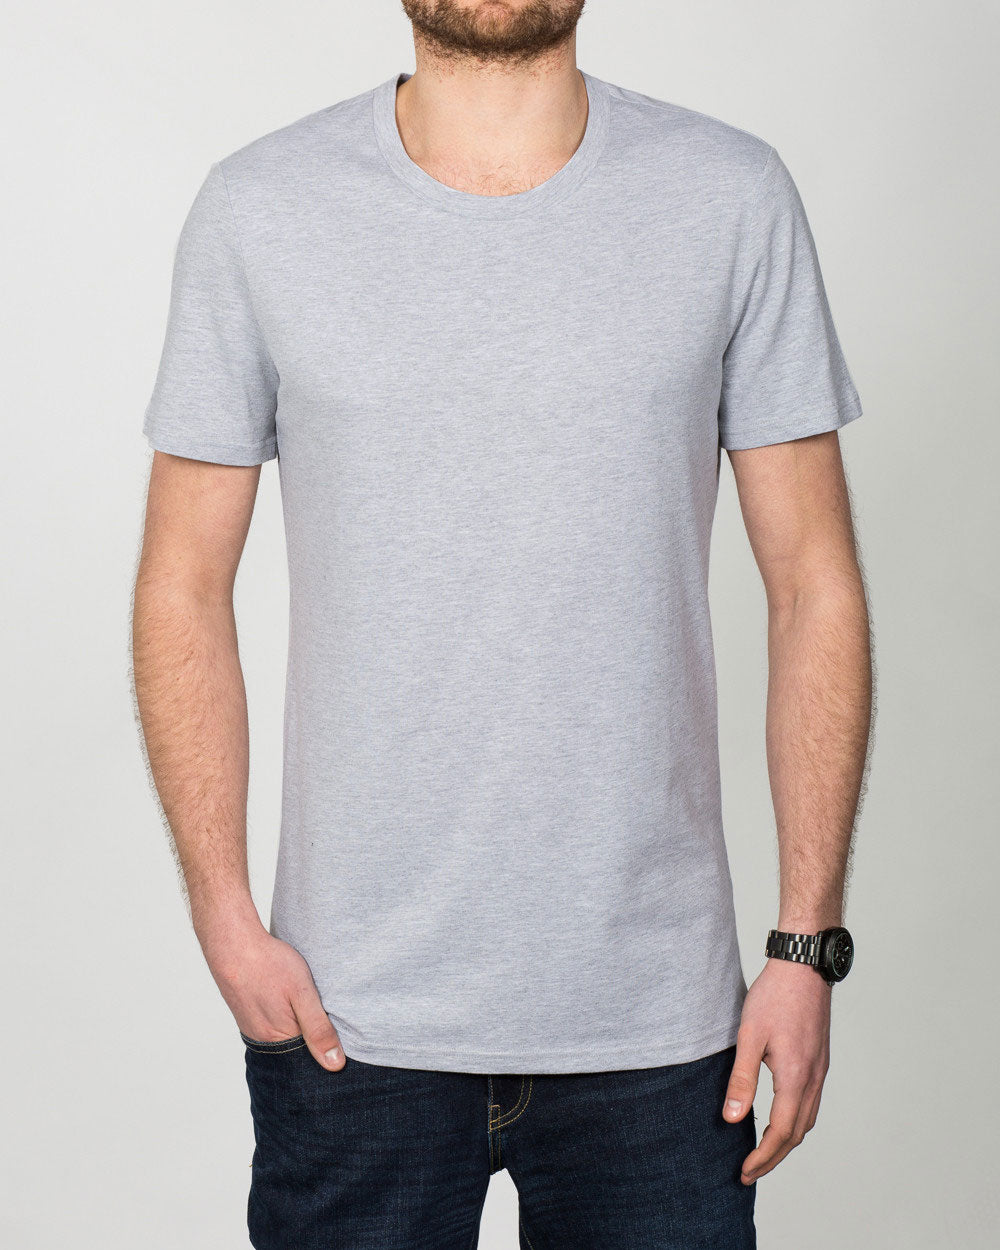 2t Tall T-Shirt (heather grey)